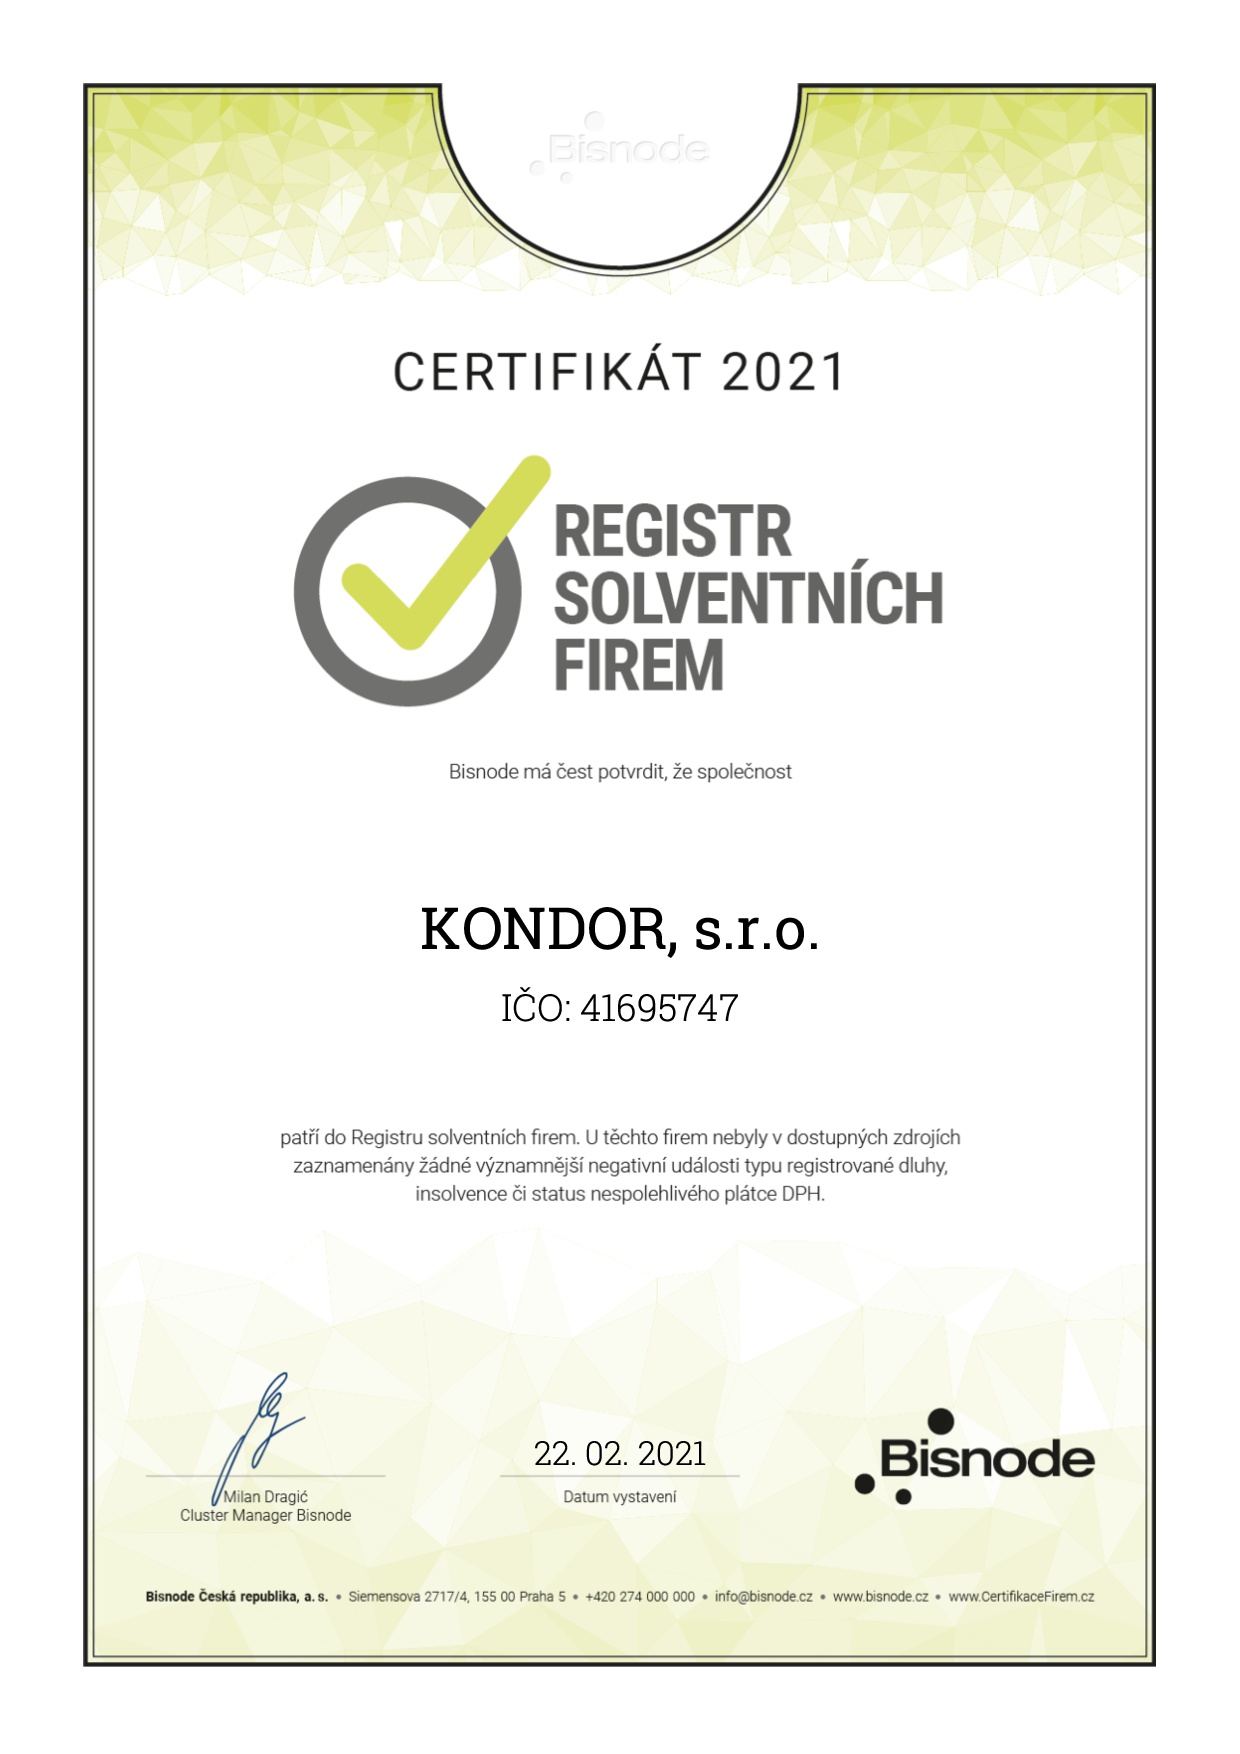 Certifikát 2020 - registr solventních firem